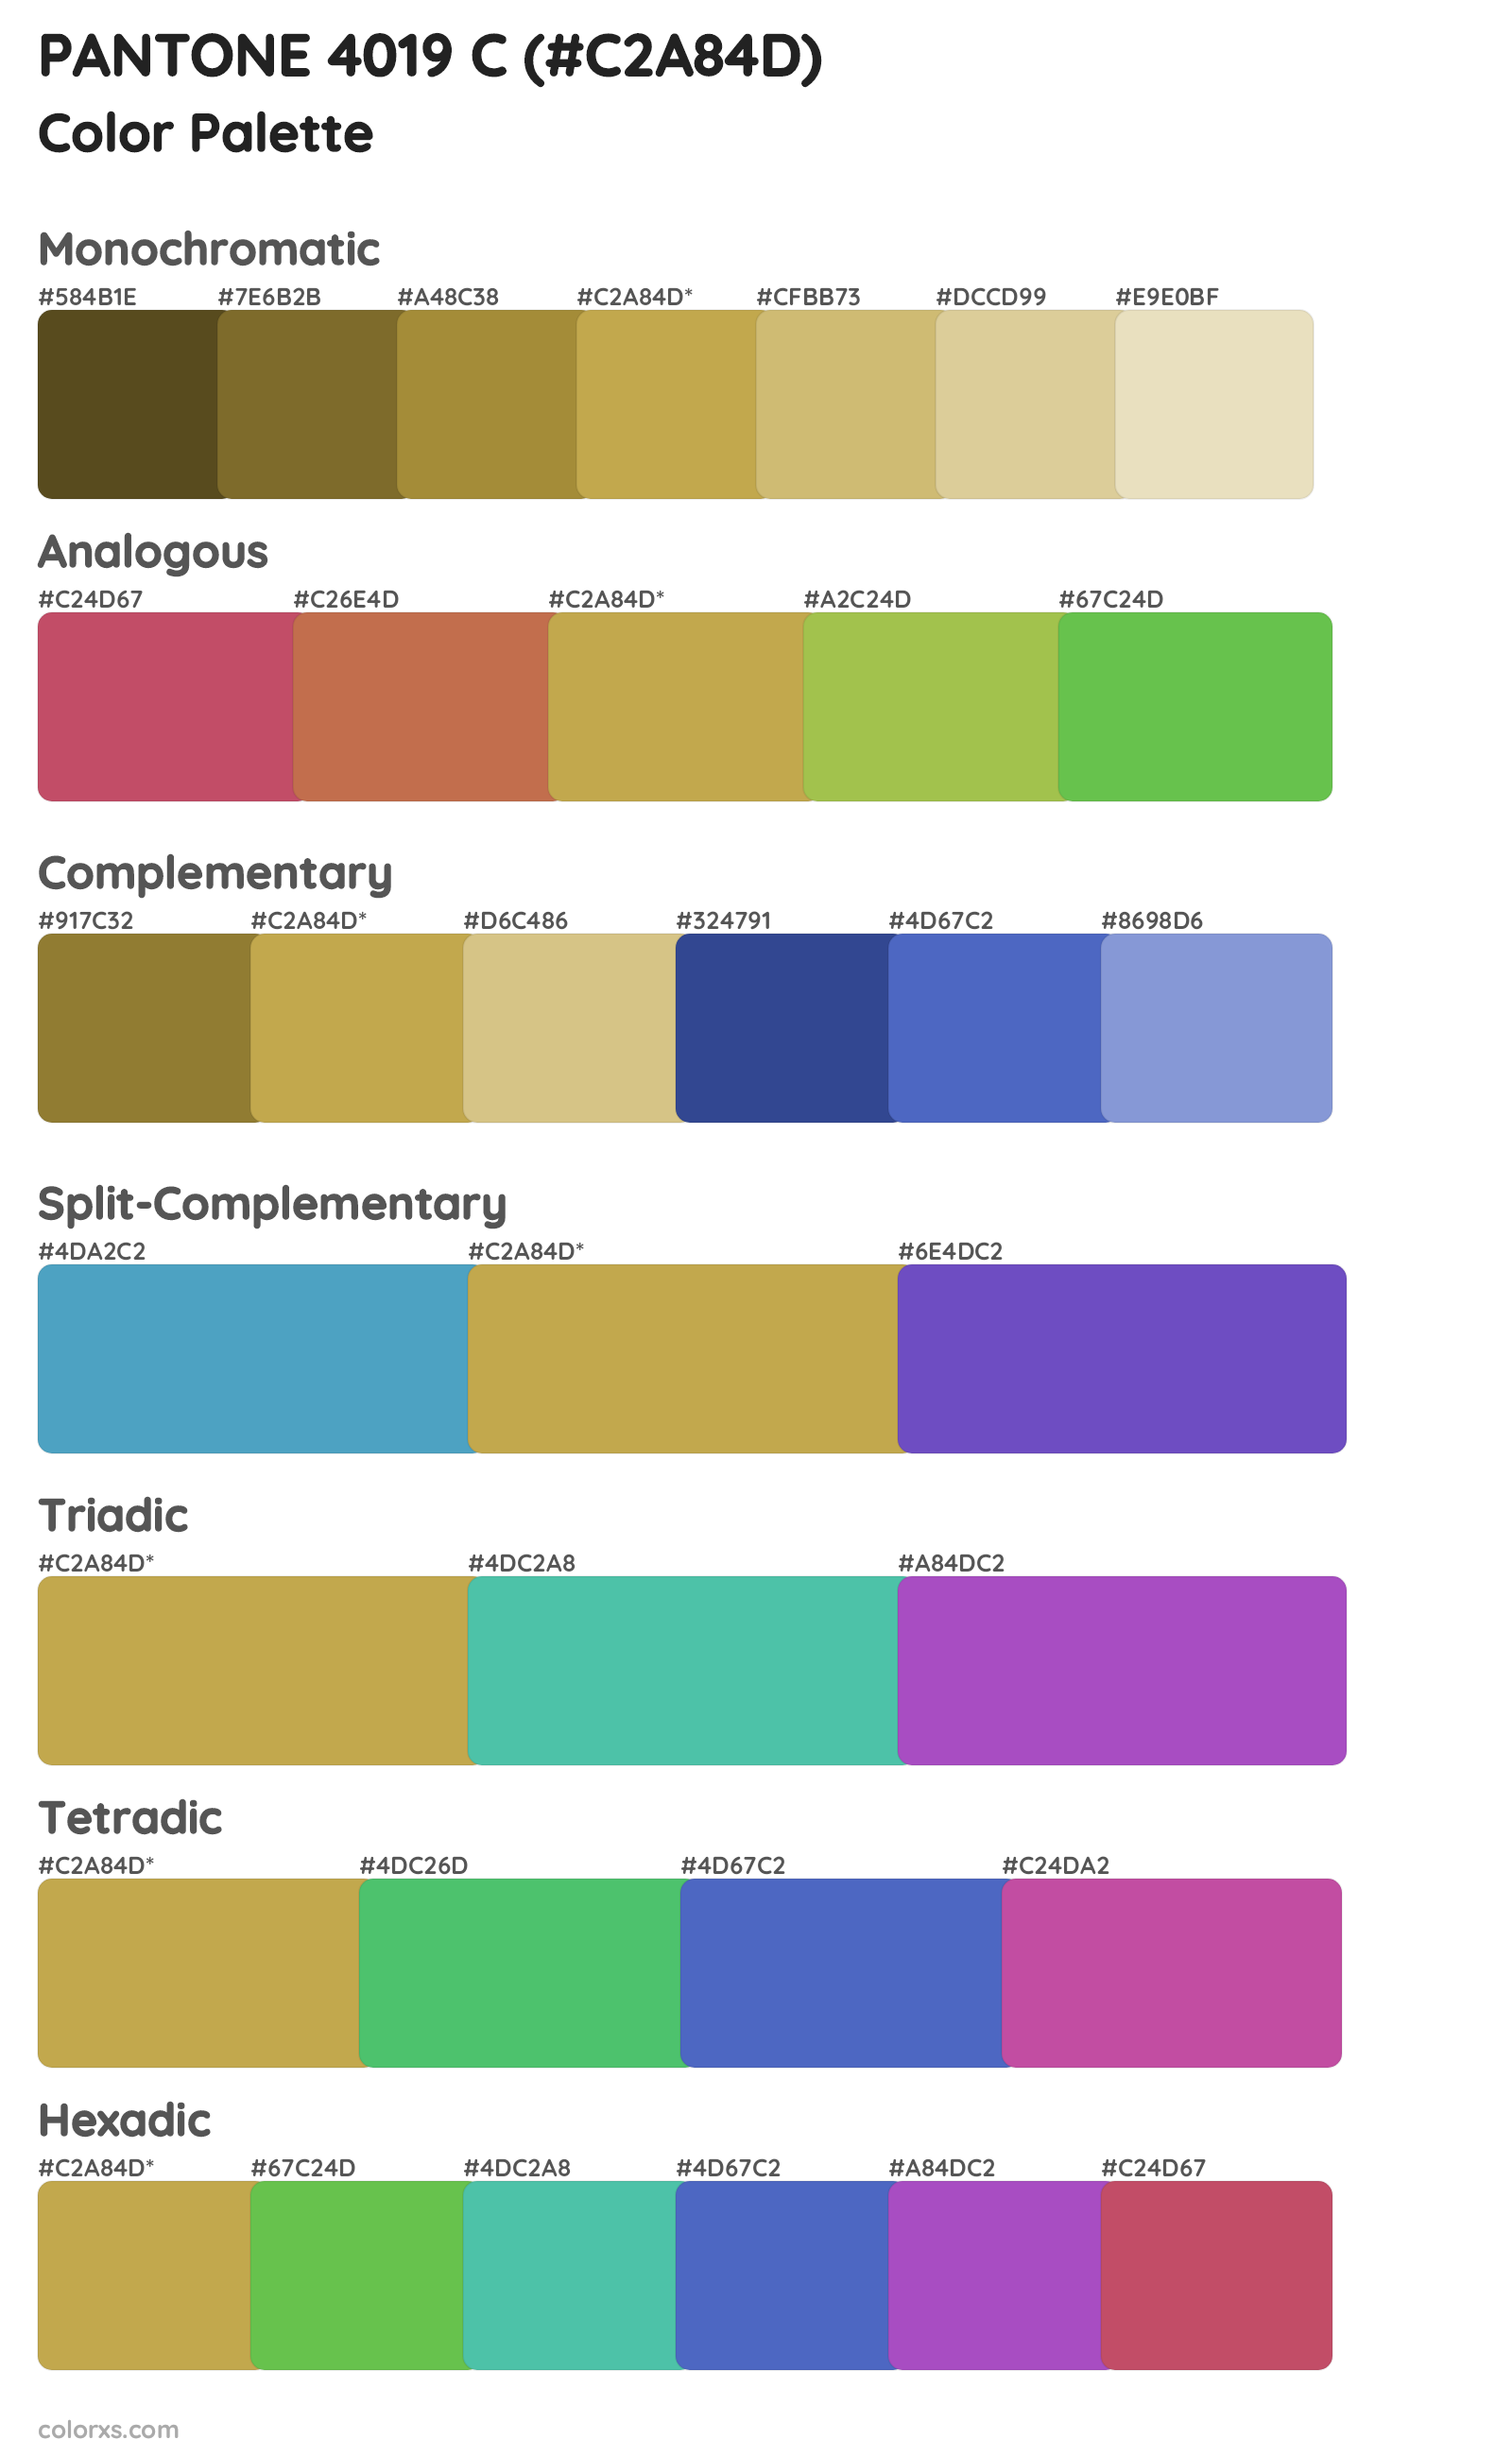 PANTONE 4019 C Color Scheme Palettes